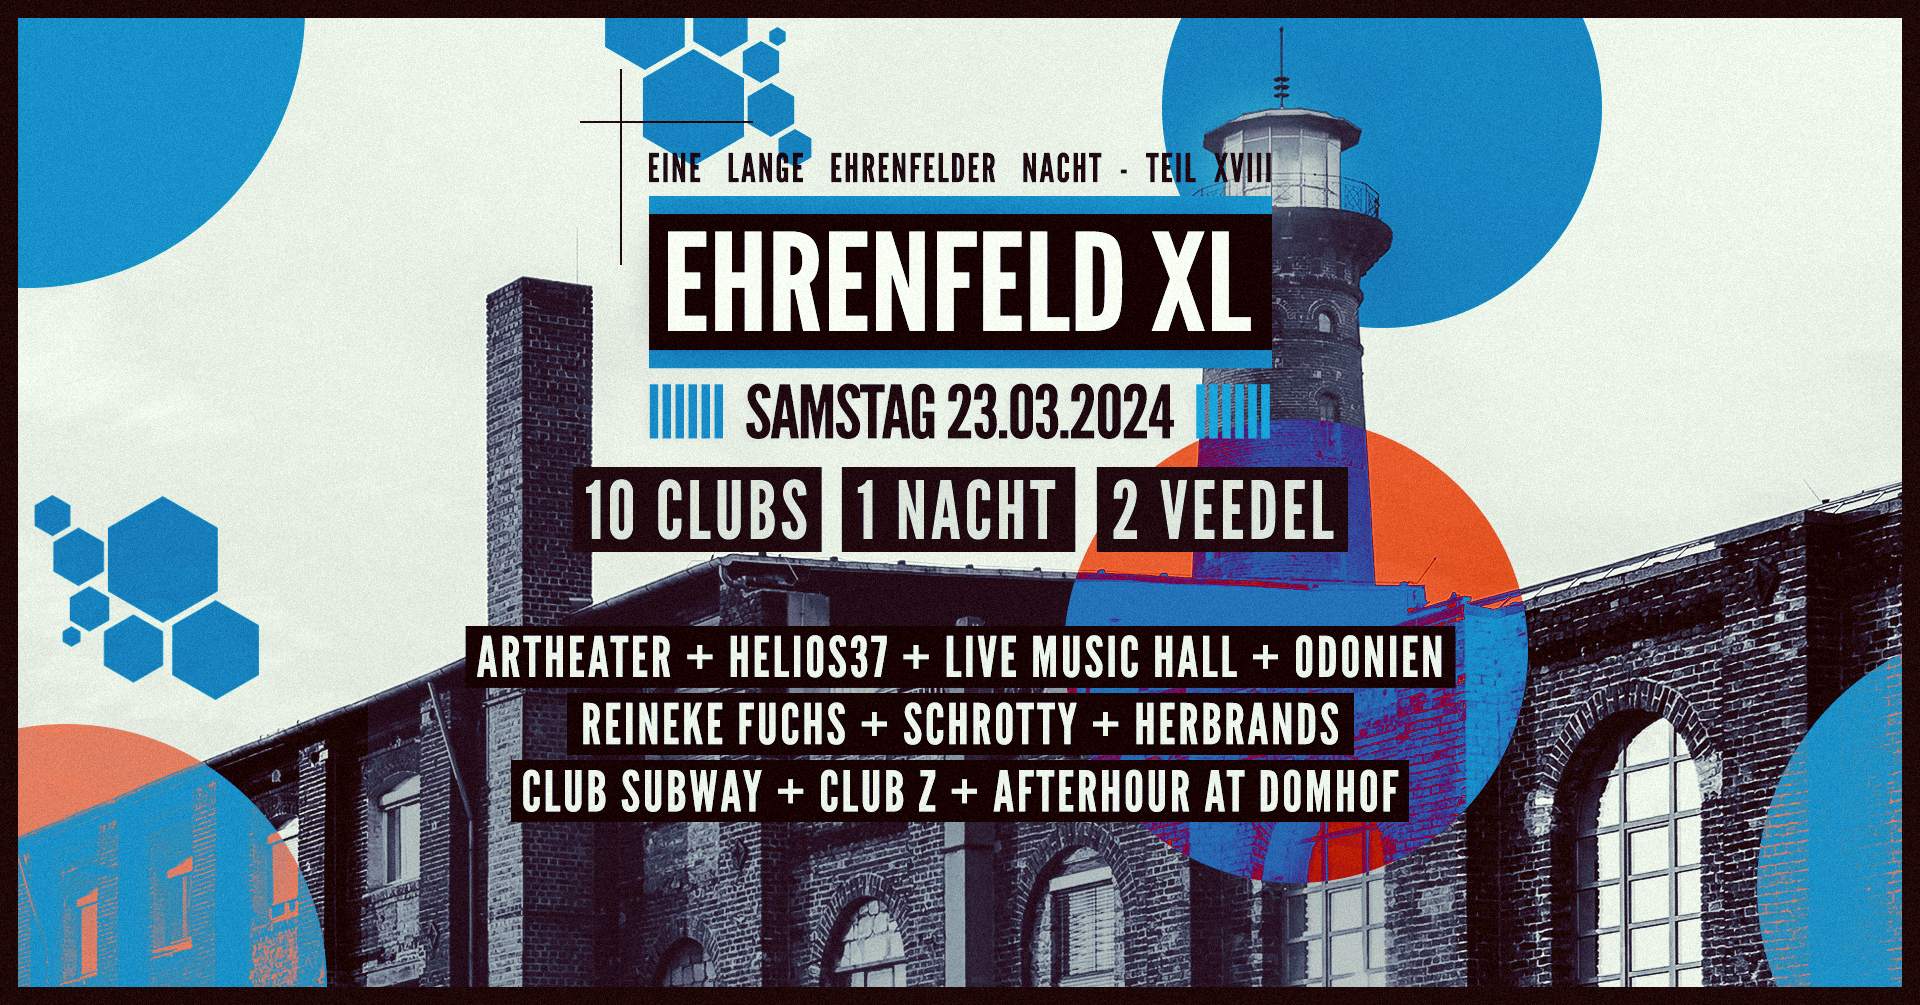 Ehrenfeld XL - 10 Clubs, 1 Nacht, 2 Veedel - フライヤー表